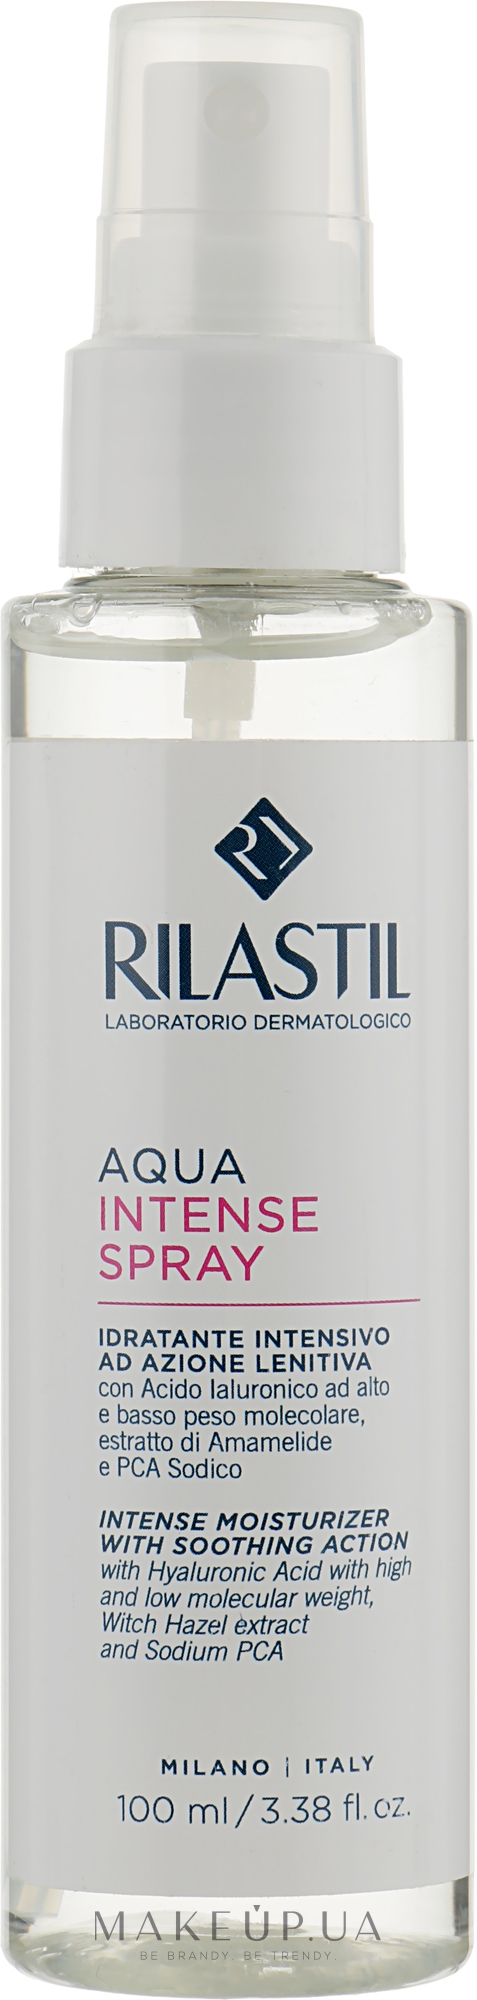 Інтенсивний зволожувальний спрей для обличчя - Rilastil Aqua Intense Spray — фото 100ml